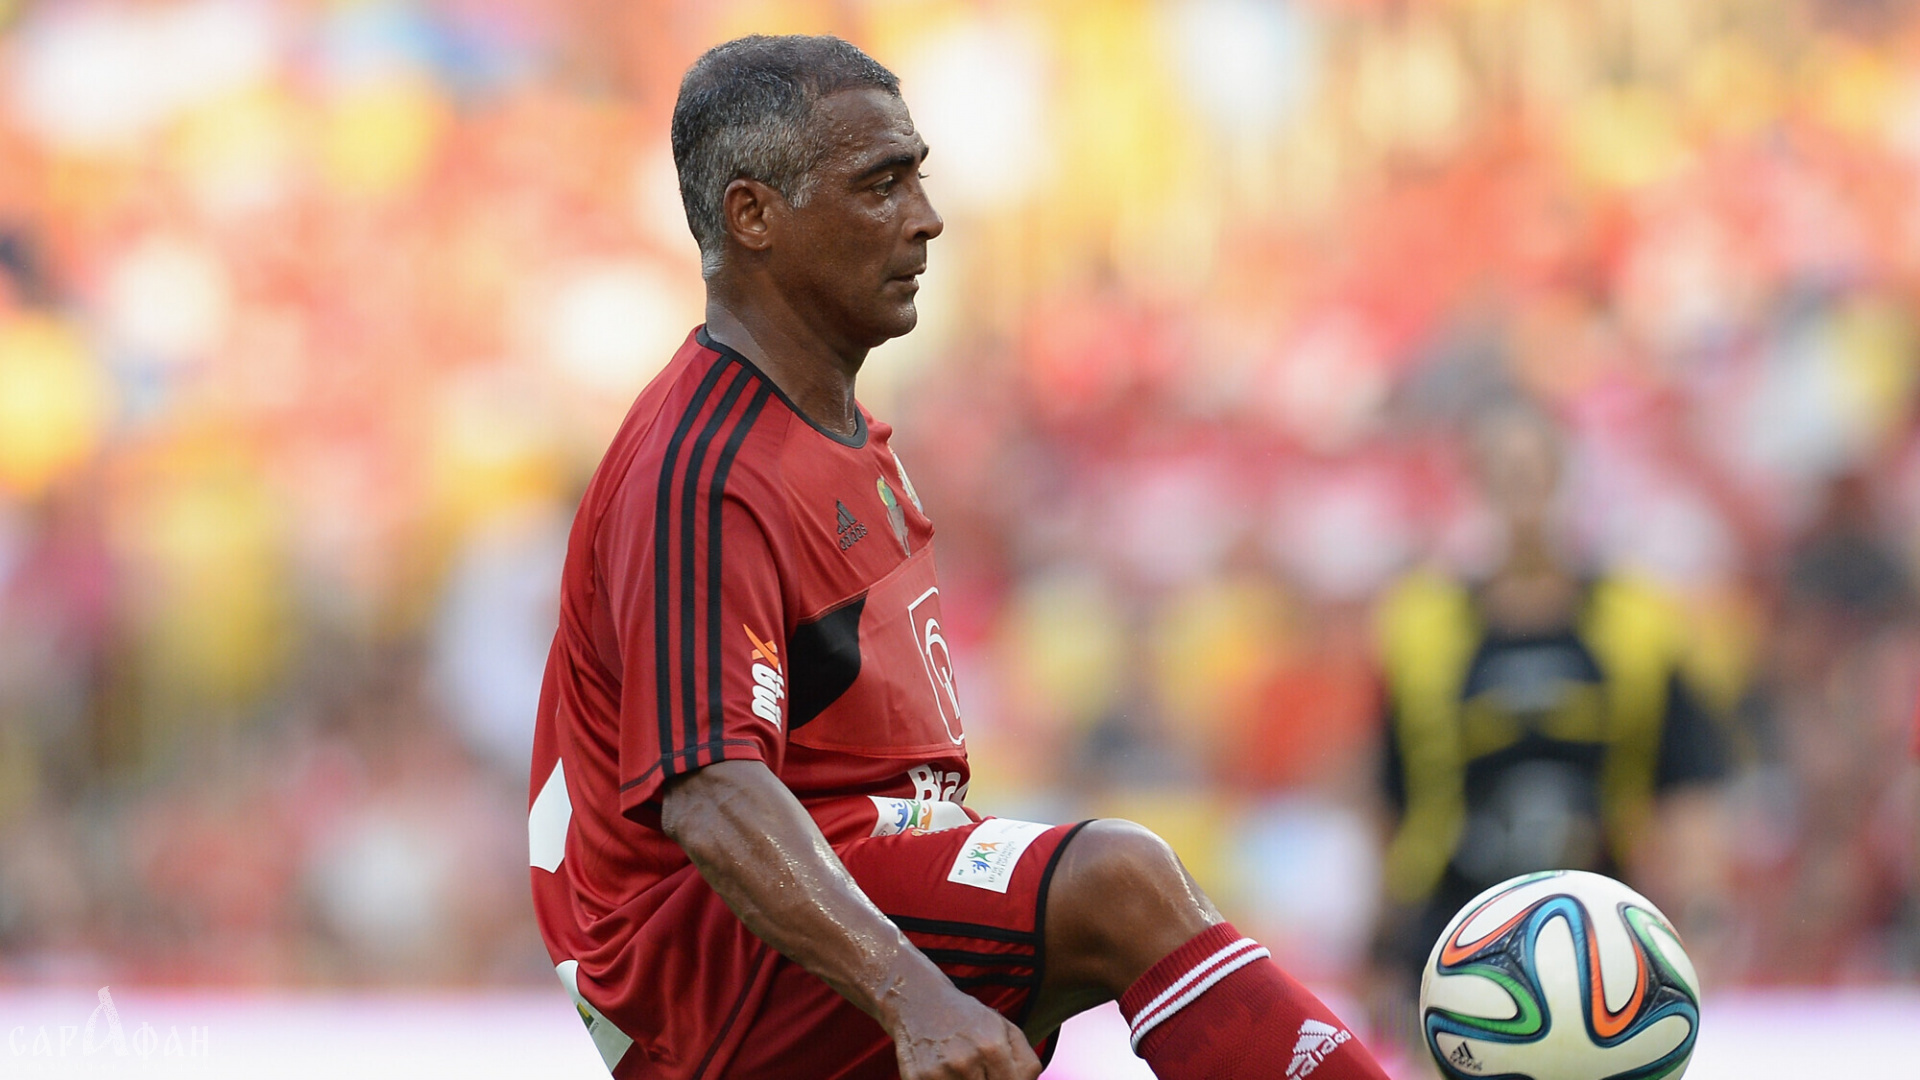 Бразильский футболист Ромарио возобновил карьеру в 58 лет, чтобы сыграть со своим сыном